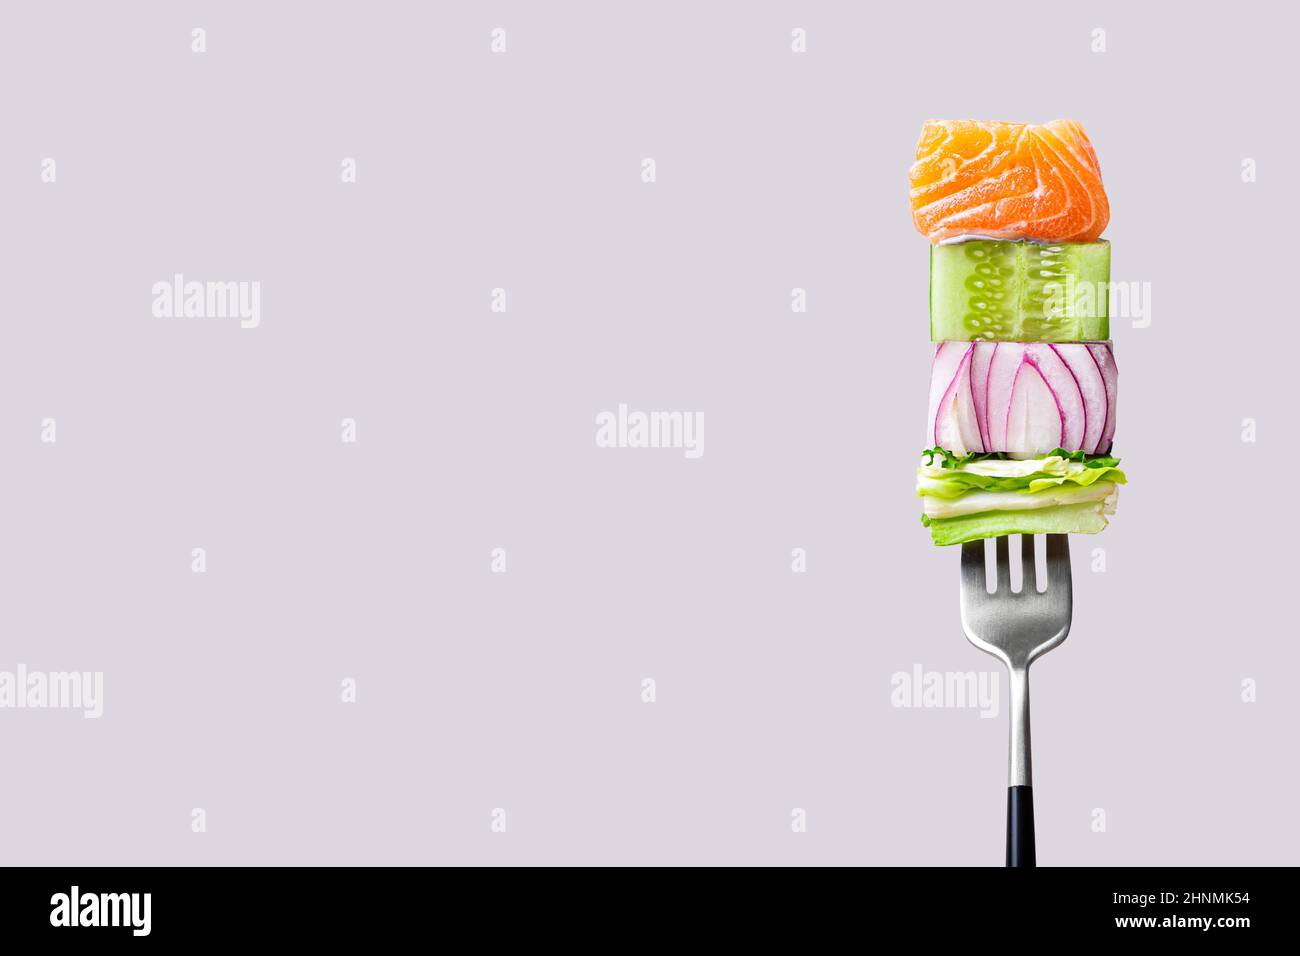 fourchette avec nourriture sur elle: délicieux filet de saumon, concombre, oignon, salade sur fond gris Banque D'Images